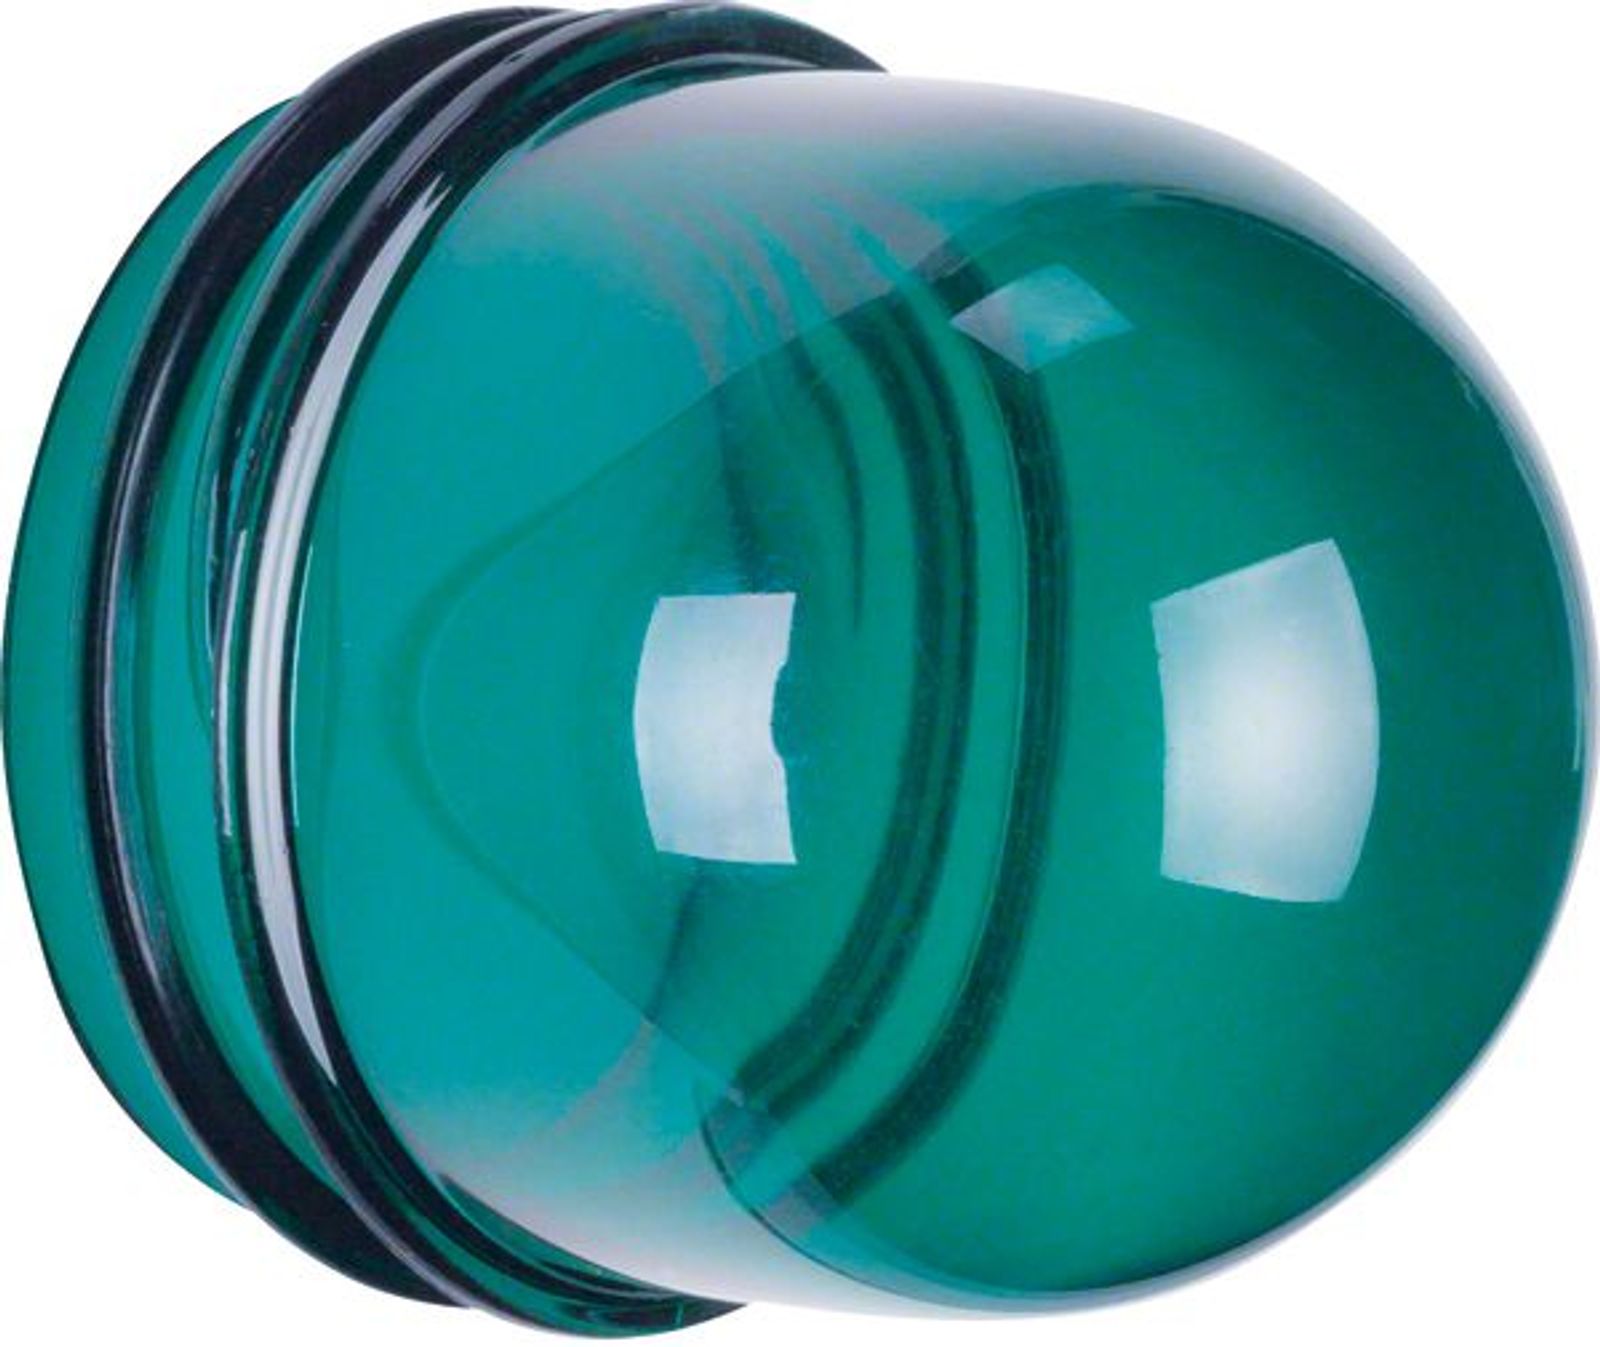 Berker 1232 Haube für Lichtsignal E14 Zubehör grün transparent